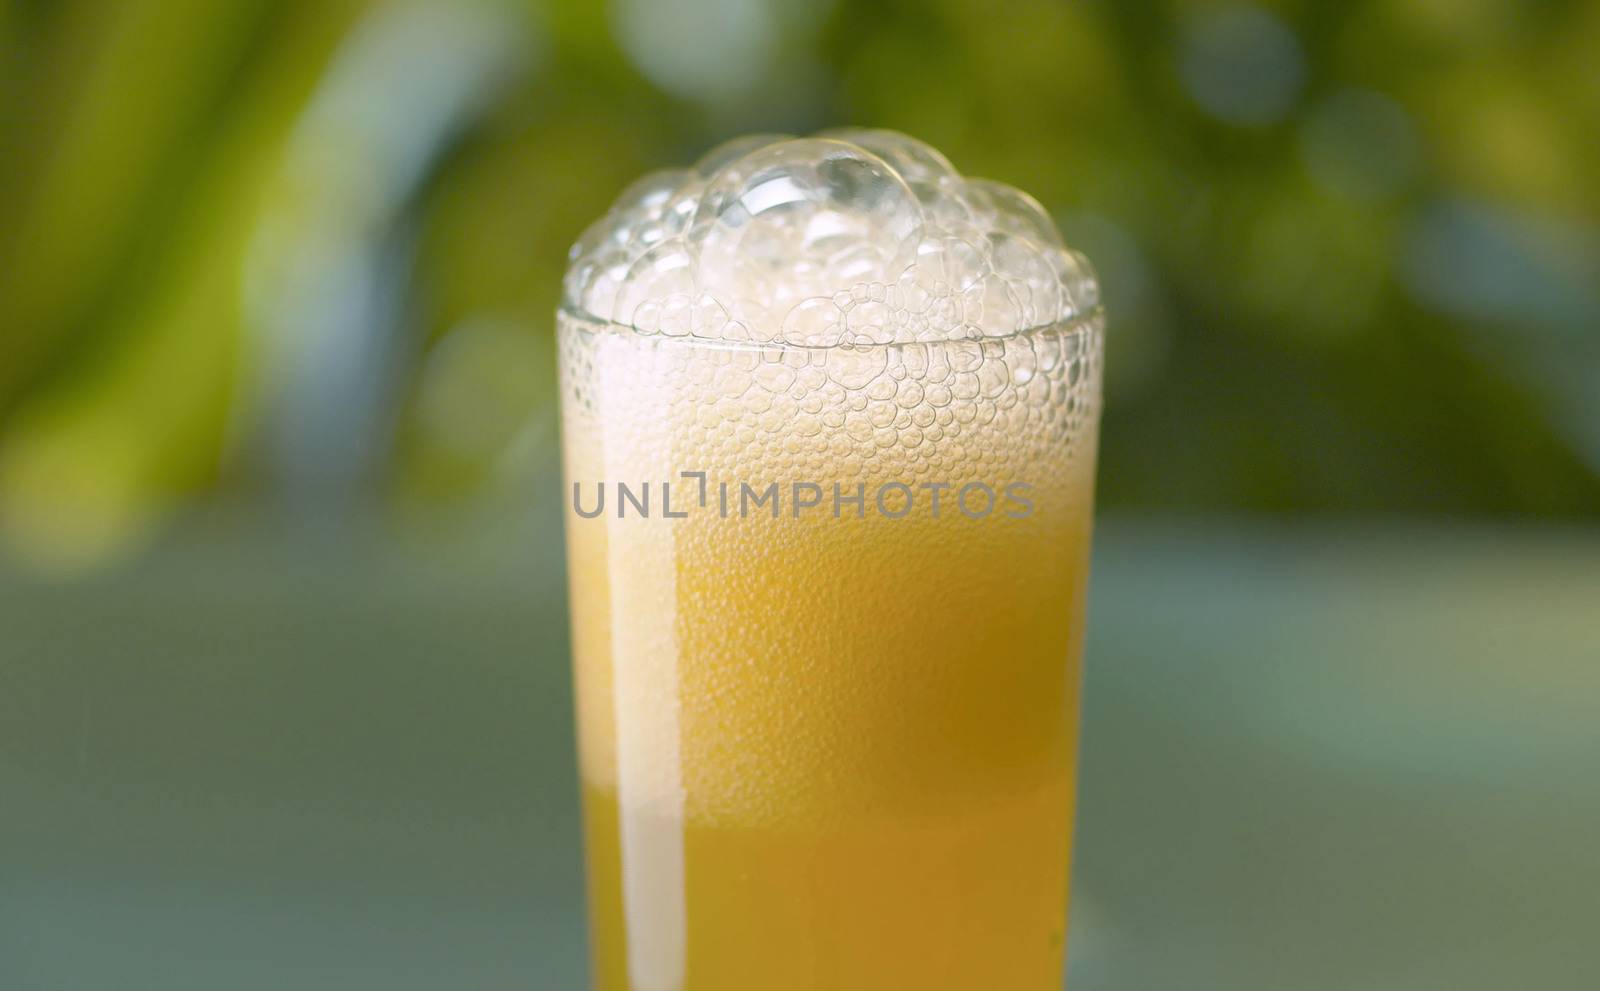 Fizzy orange drink in transparent glass. Close up sparkling orange beverage on natural background outdoors. Refreshing lemonad drinks